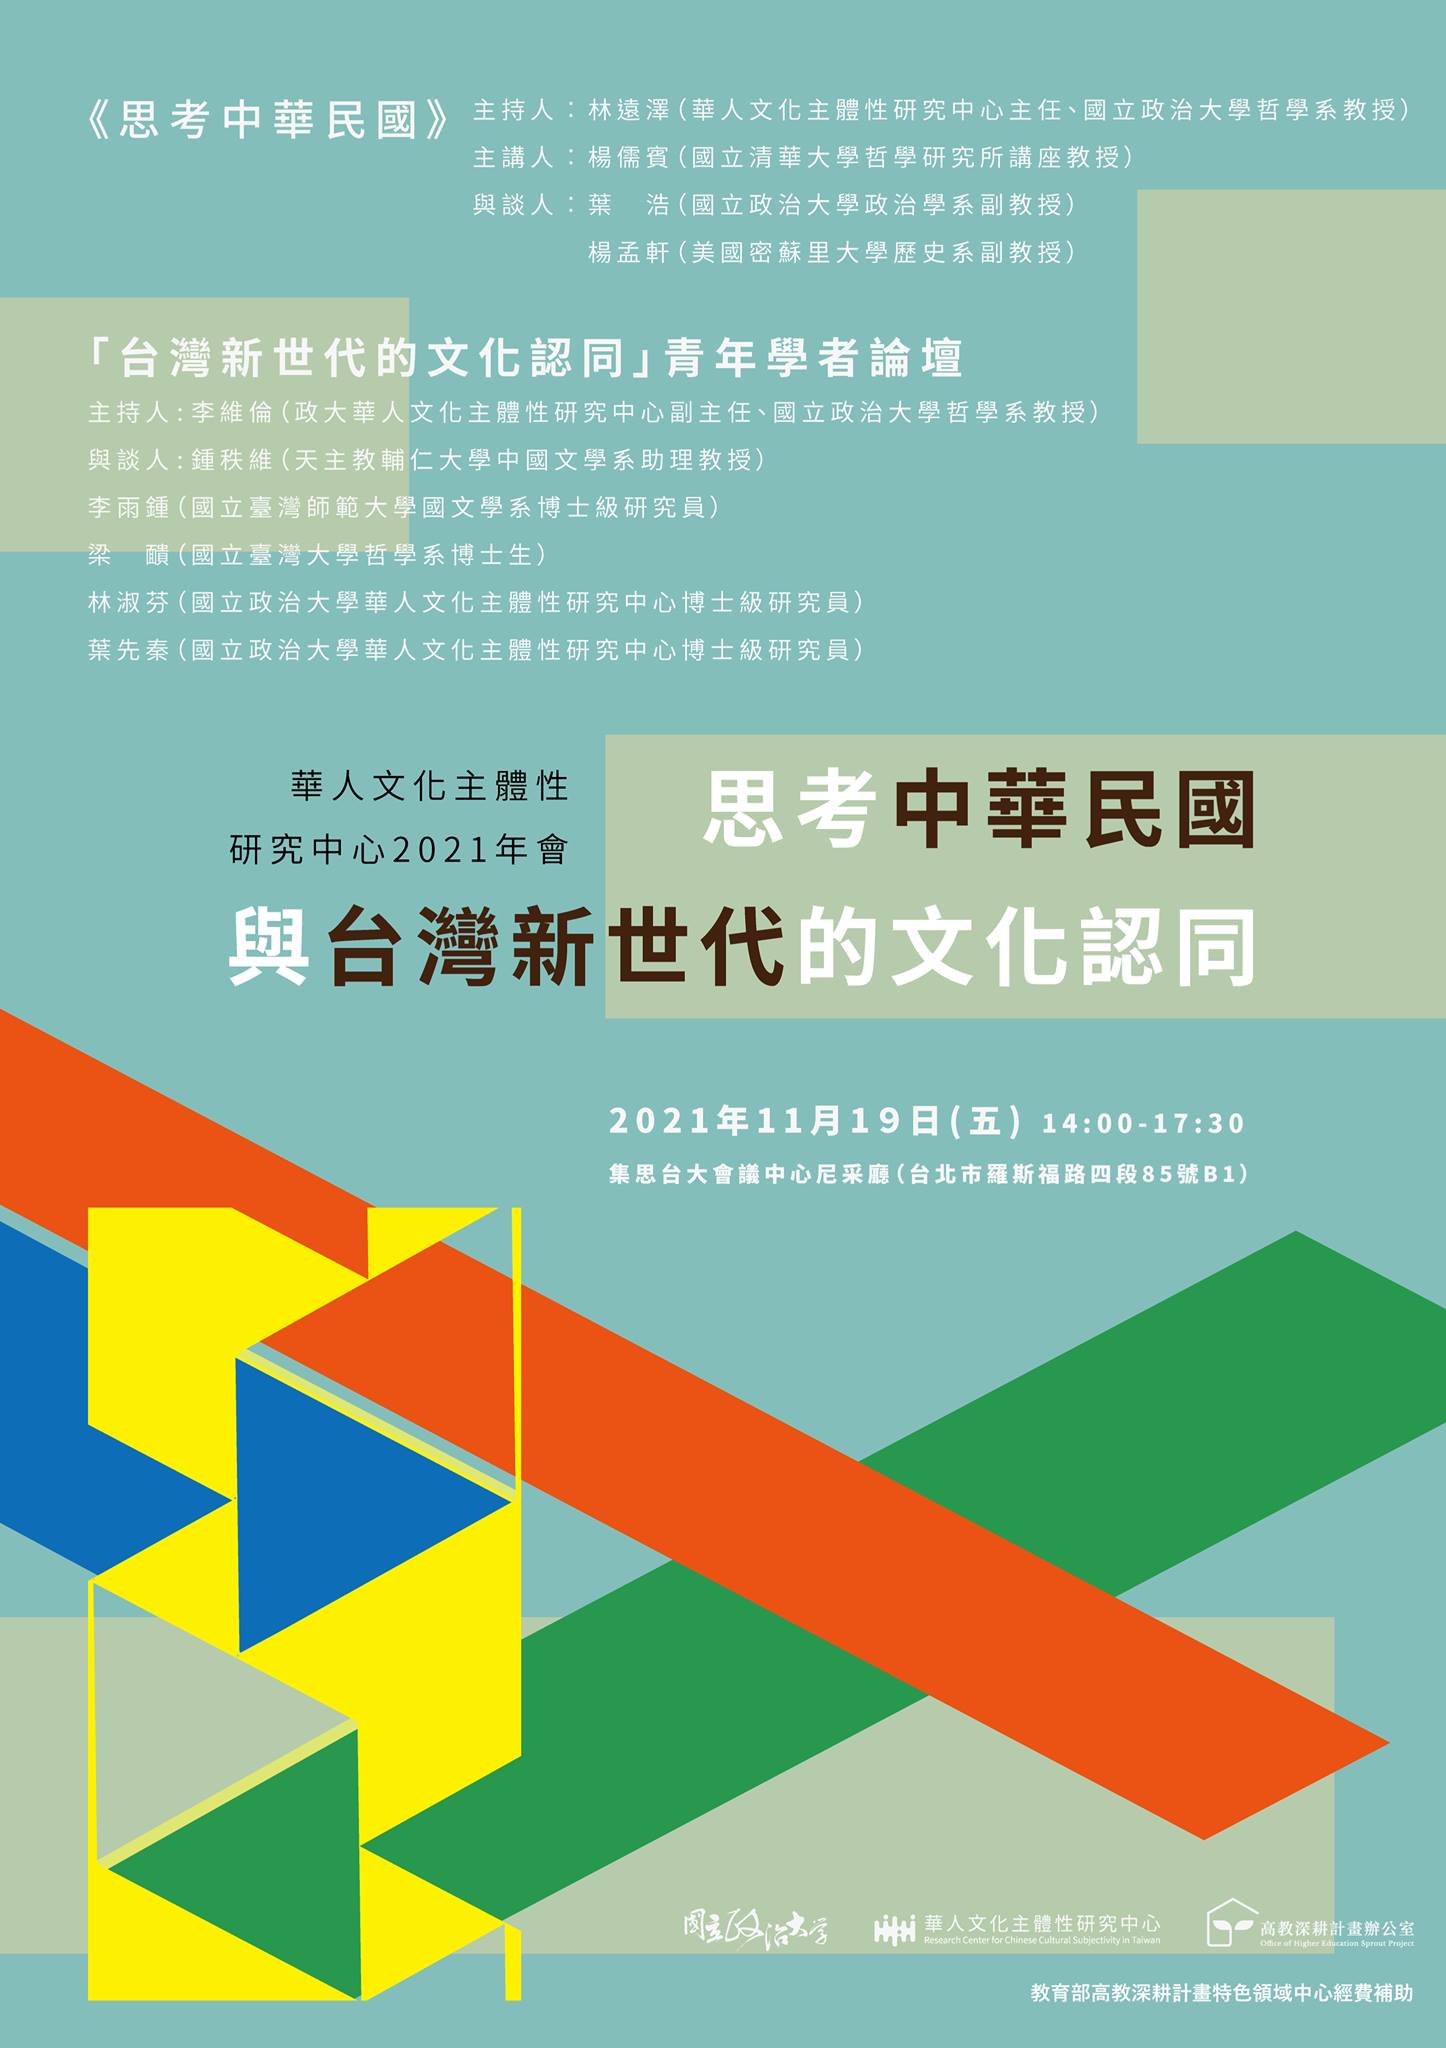 政治大學華人文化主體性研究中心2021年會系列 I